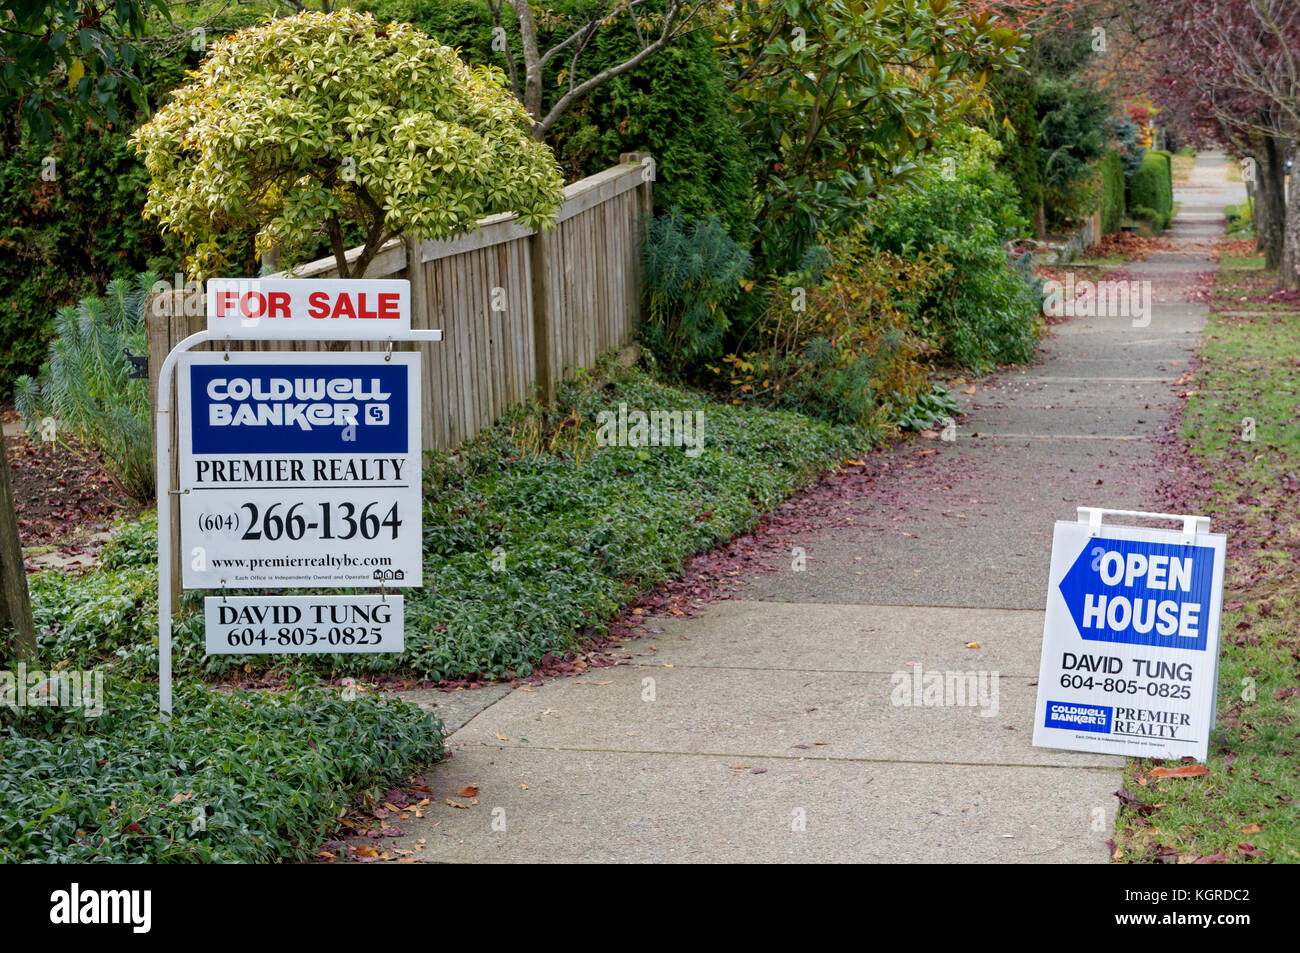 Maison à vendre et open house immo signes sur une rue résidentielle dans la région de Vancouver, BC, Canada Banque D'Images